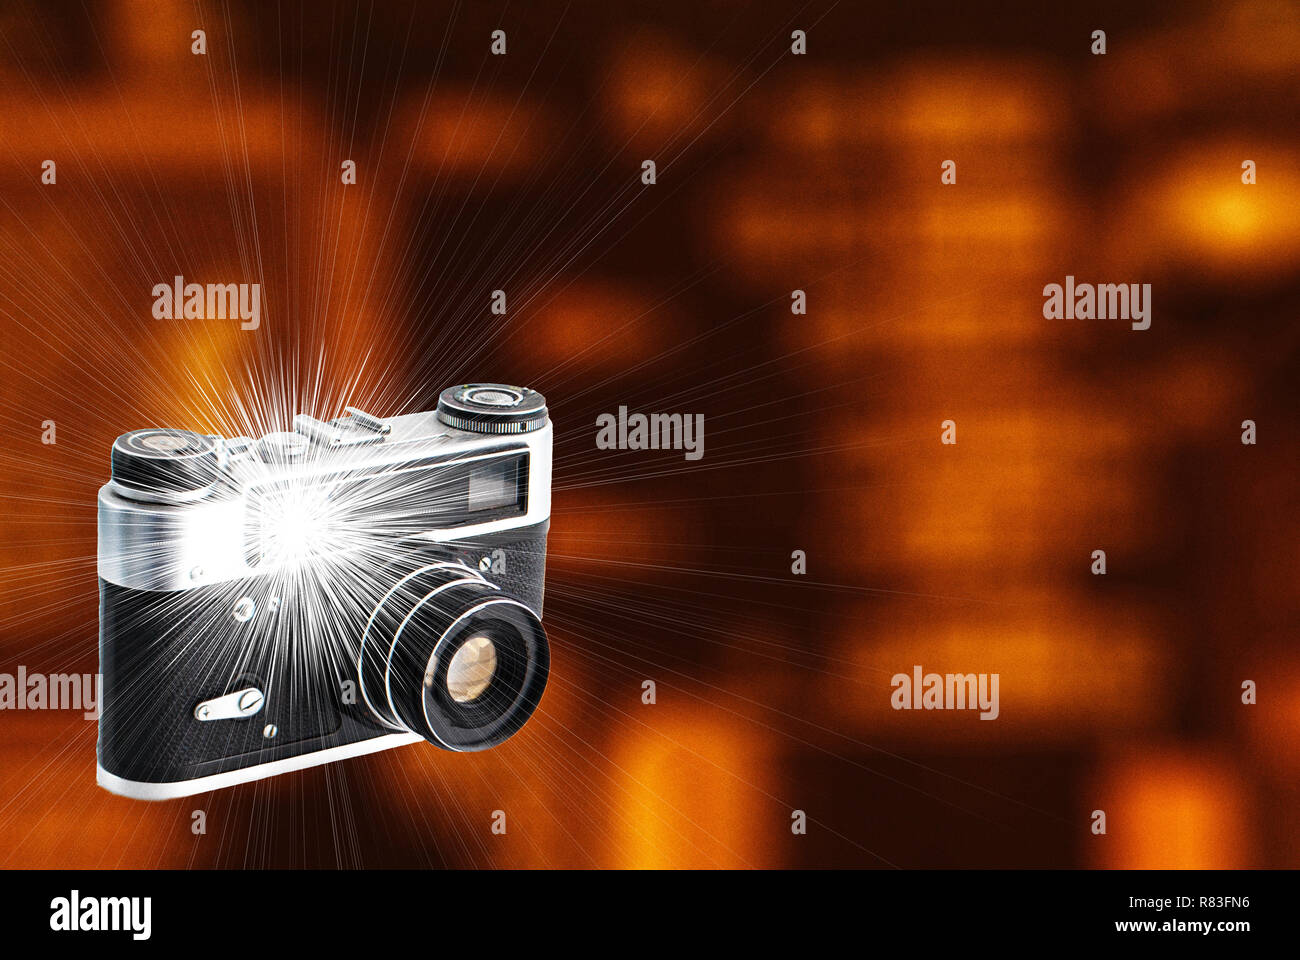 Appareil photo rétro avec un flash intégré sur un arrière-plan flou Banque D'Images